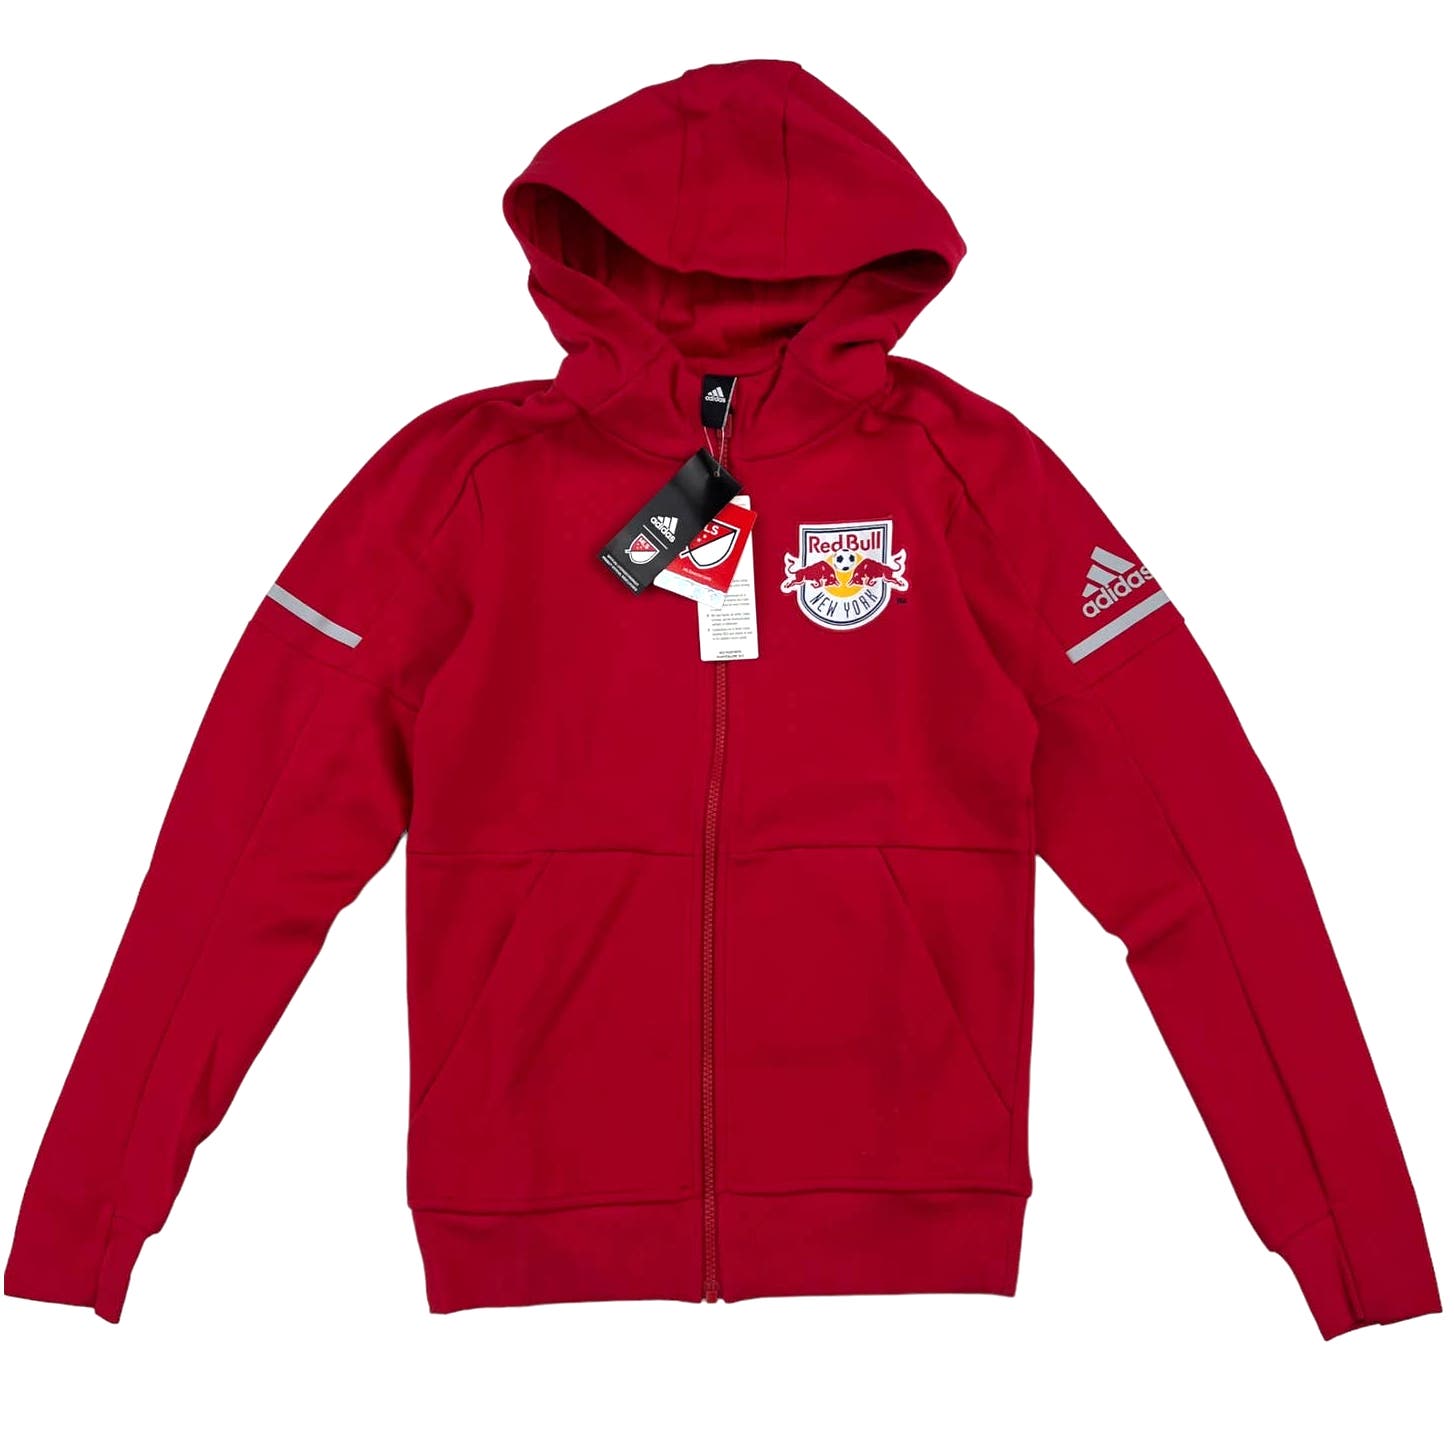 Adidas Red Bull Men Red Jacket US XS Full Zip Long Sleeve Hoodie